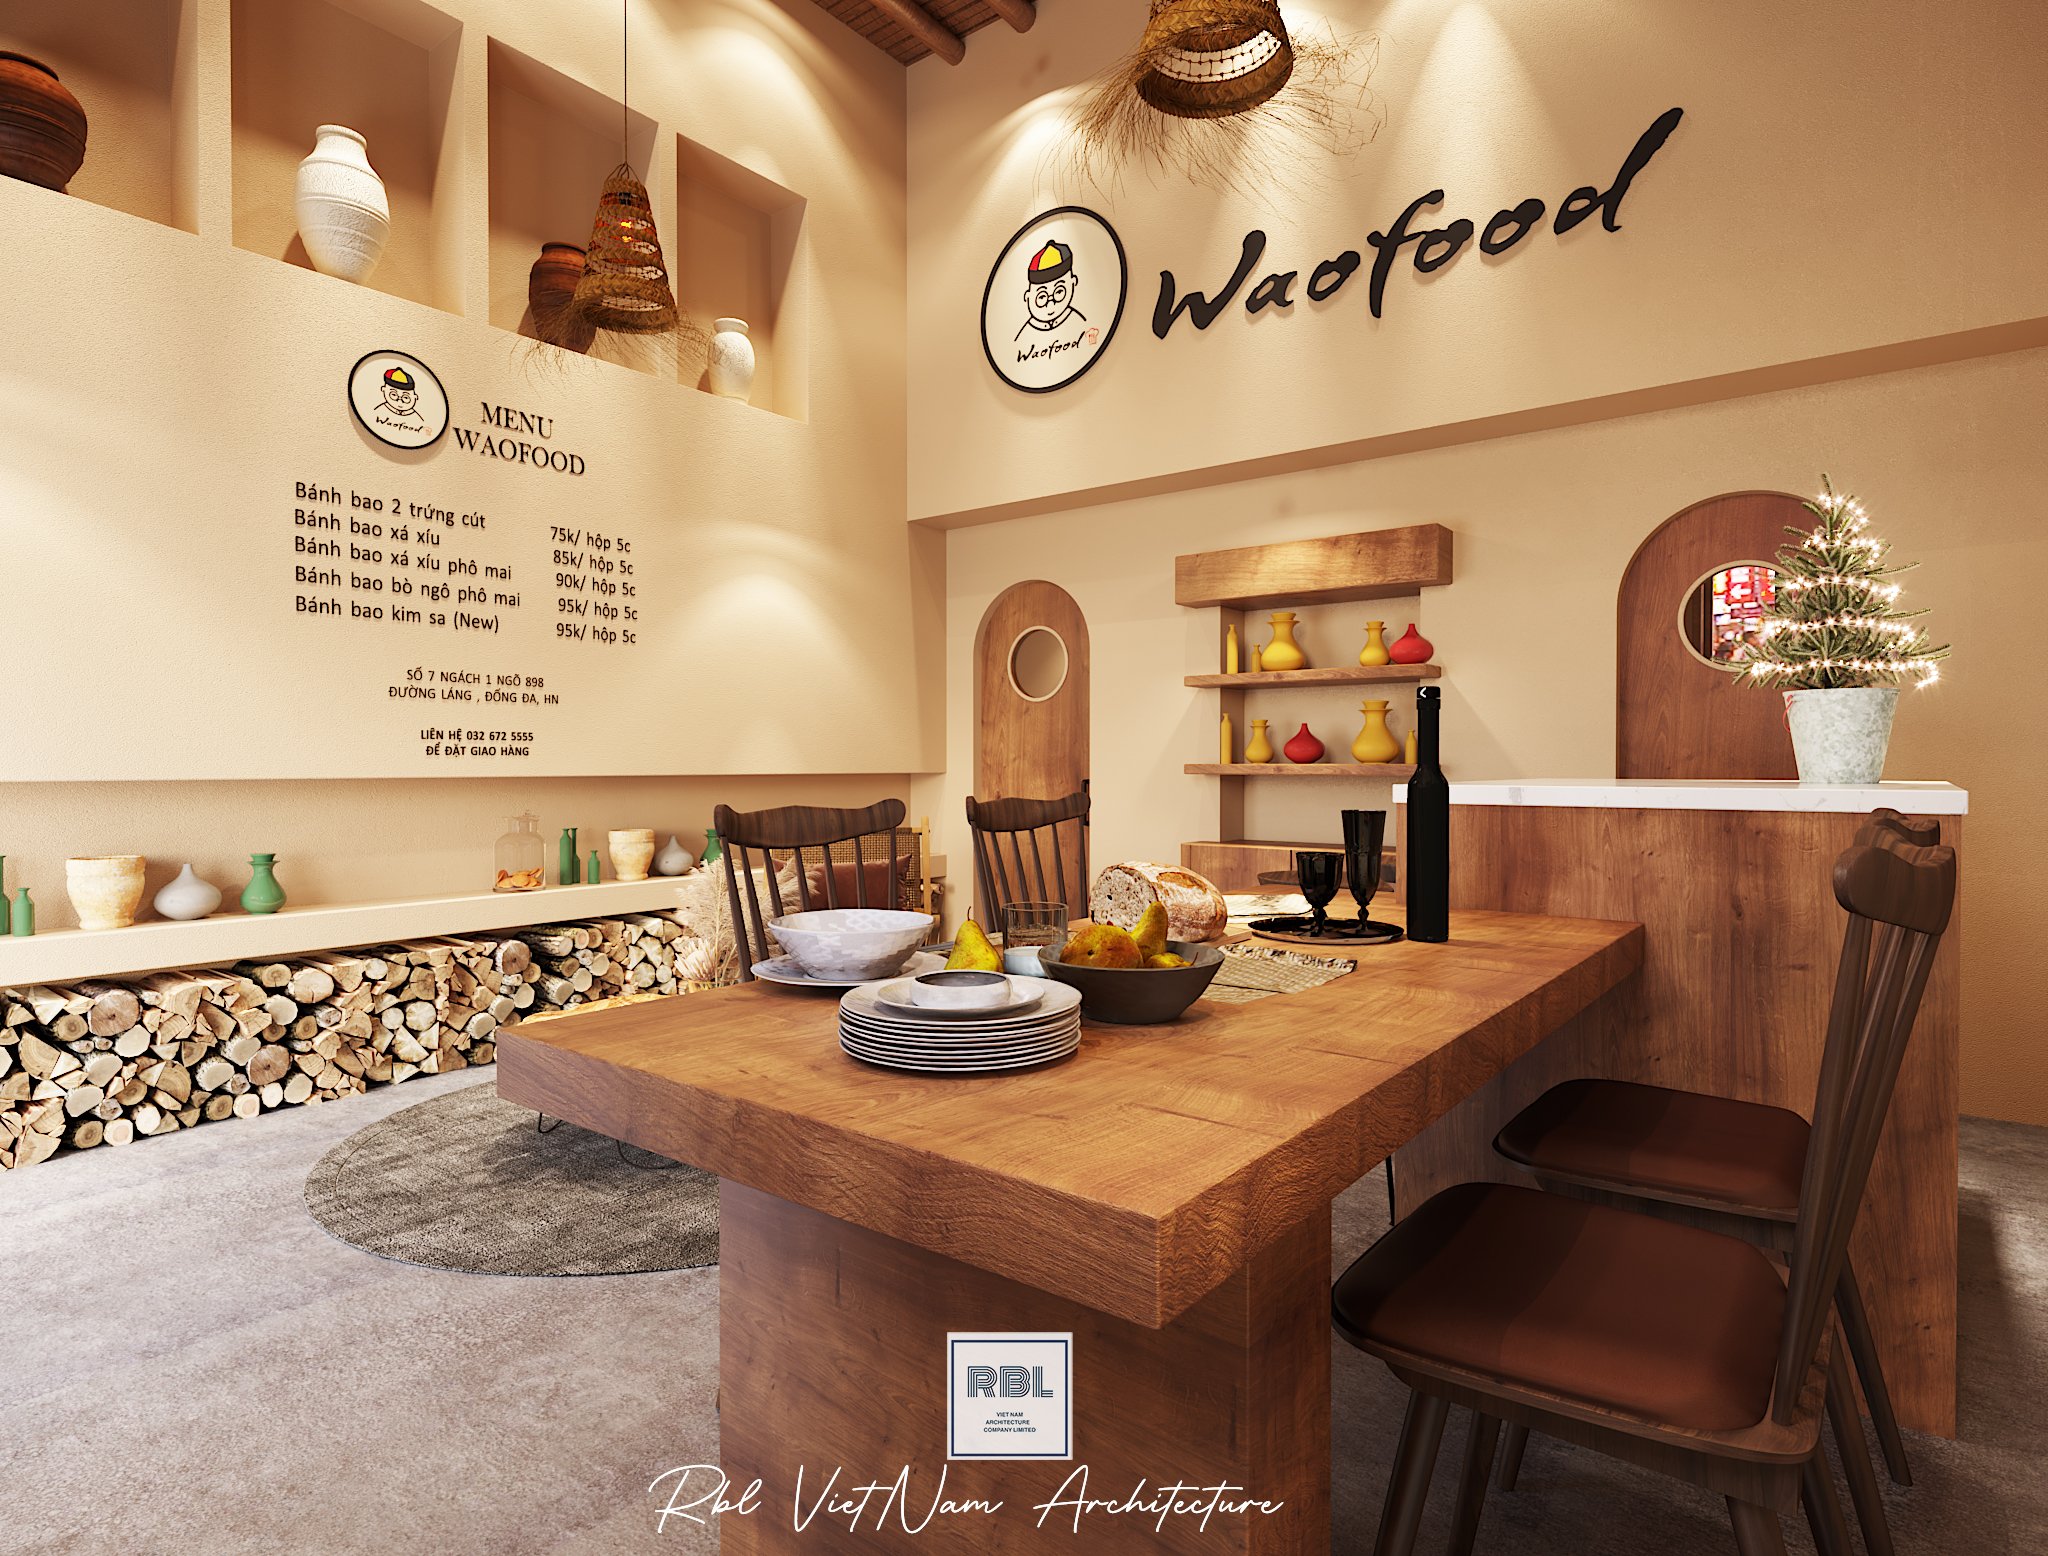 Thiết kế nội thất Nhà Hàng tại Hà Nội Cải tạo cửa hàng Waofood 1665148521 8